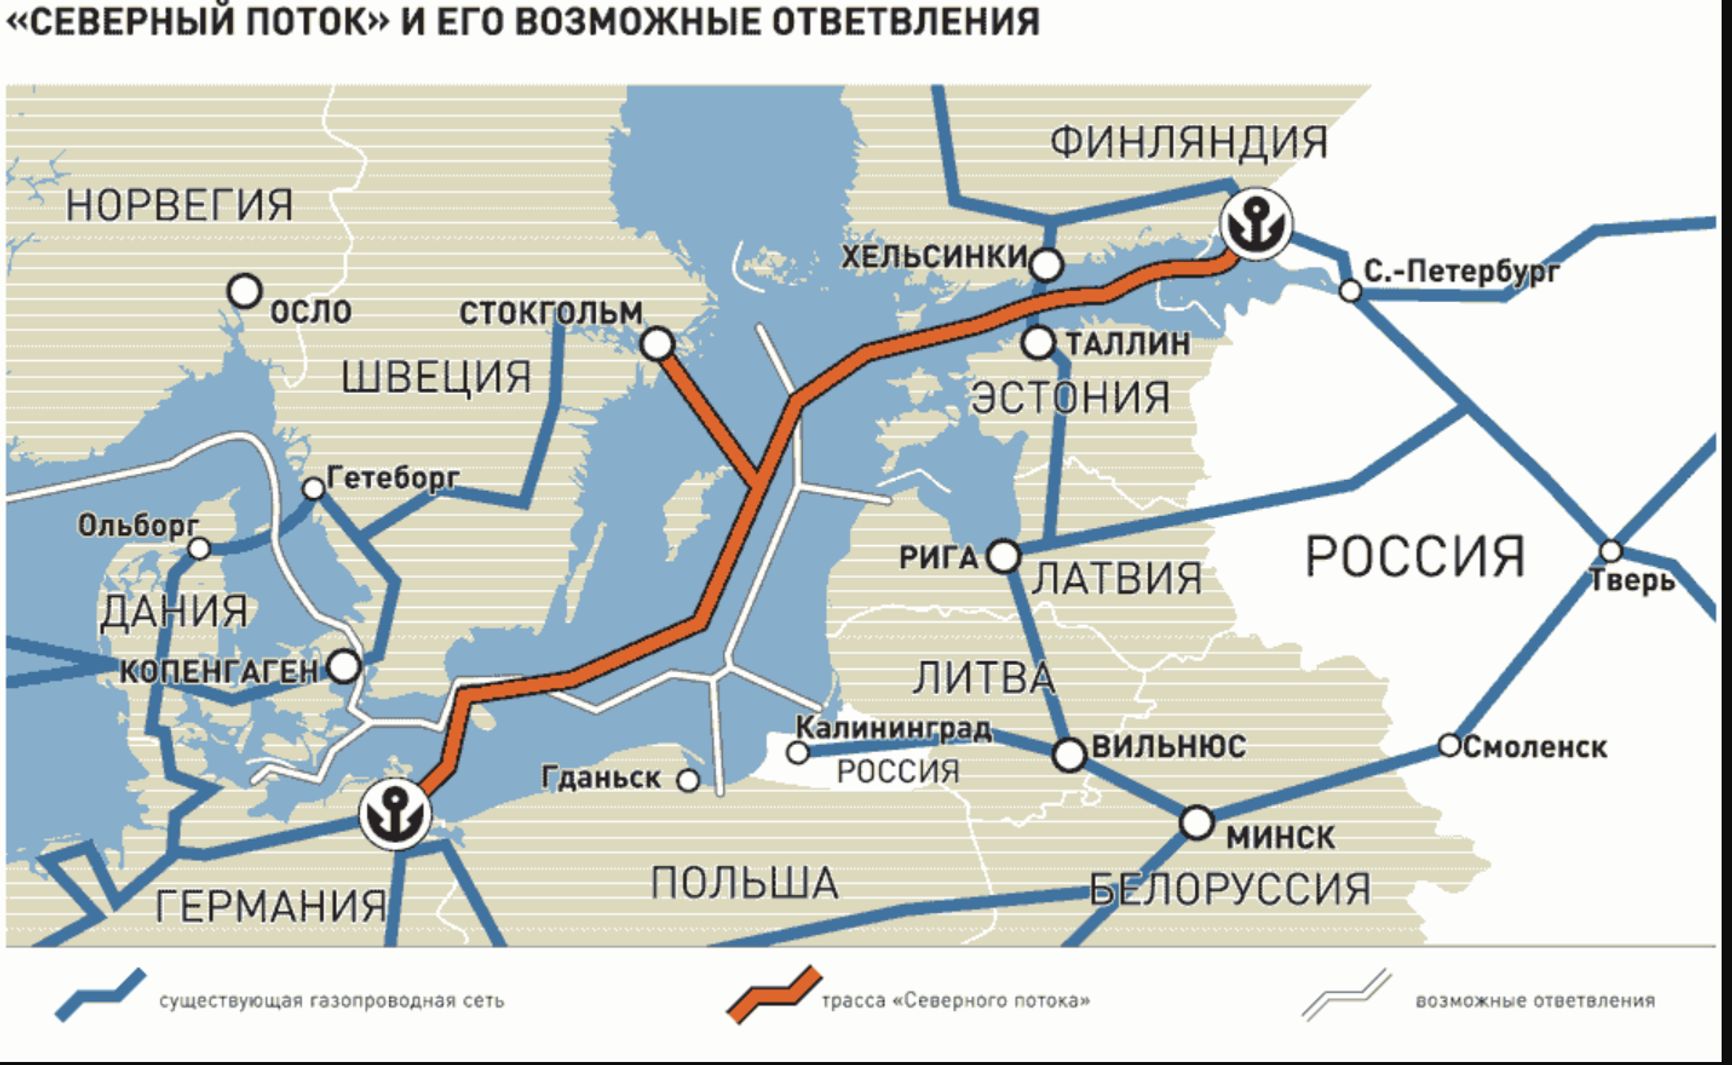 "Северный поток" и его возможные ответвления. Источник: "Газпром"